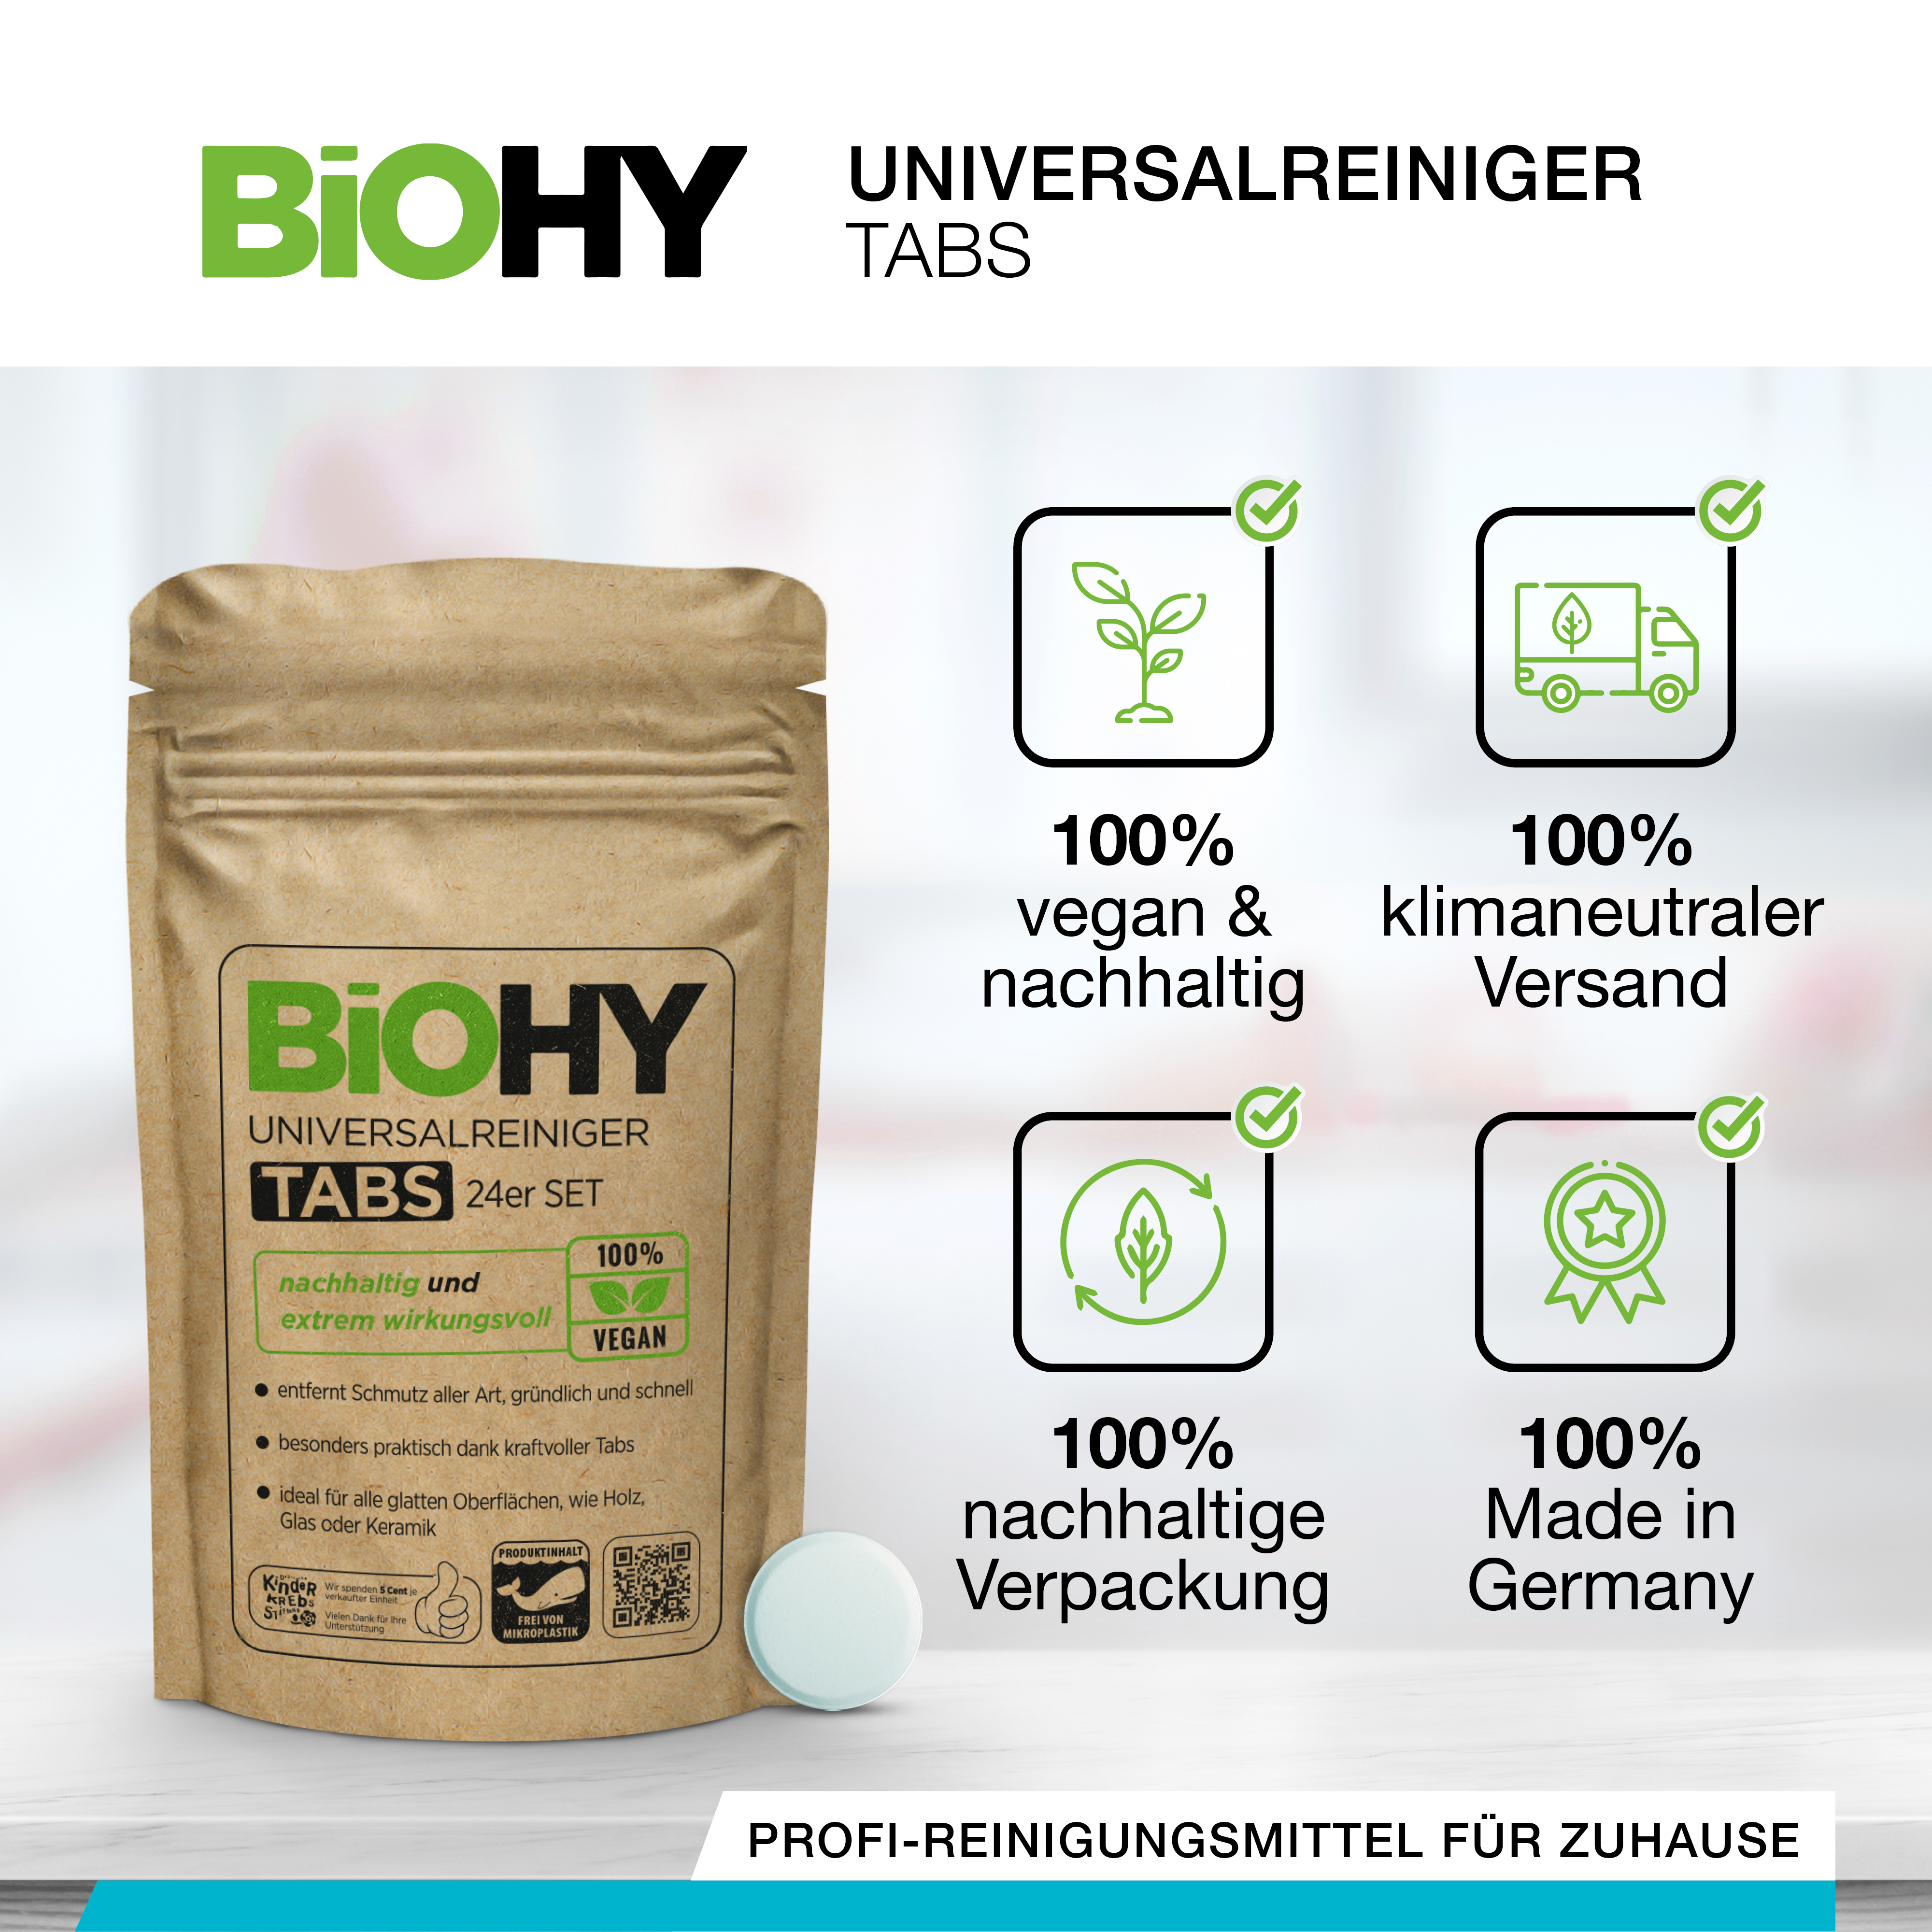 biohy-bodenreiniger-fuer-wischroboter-beschreibung_001